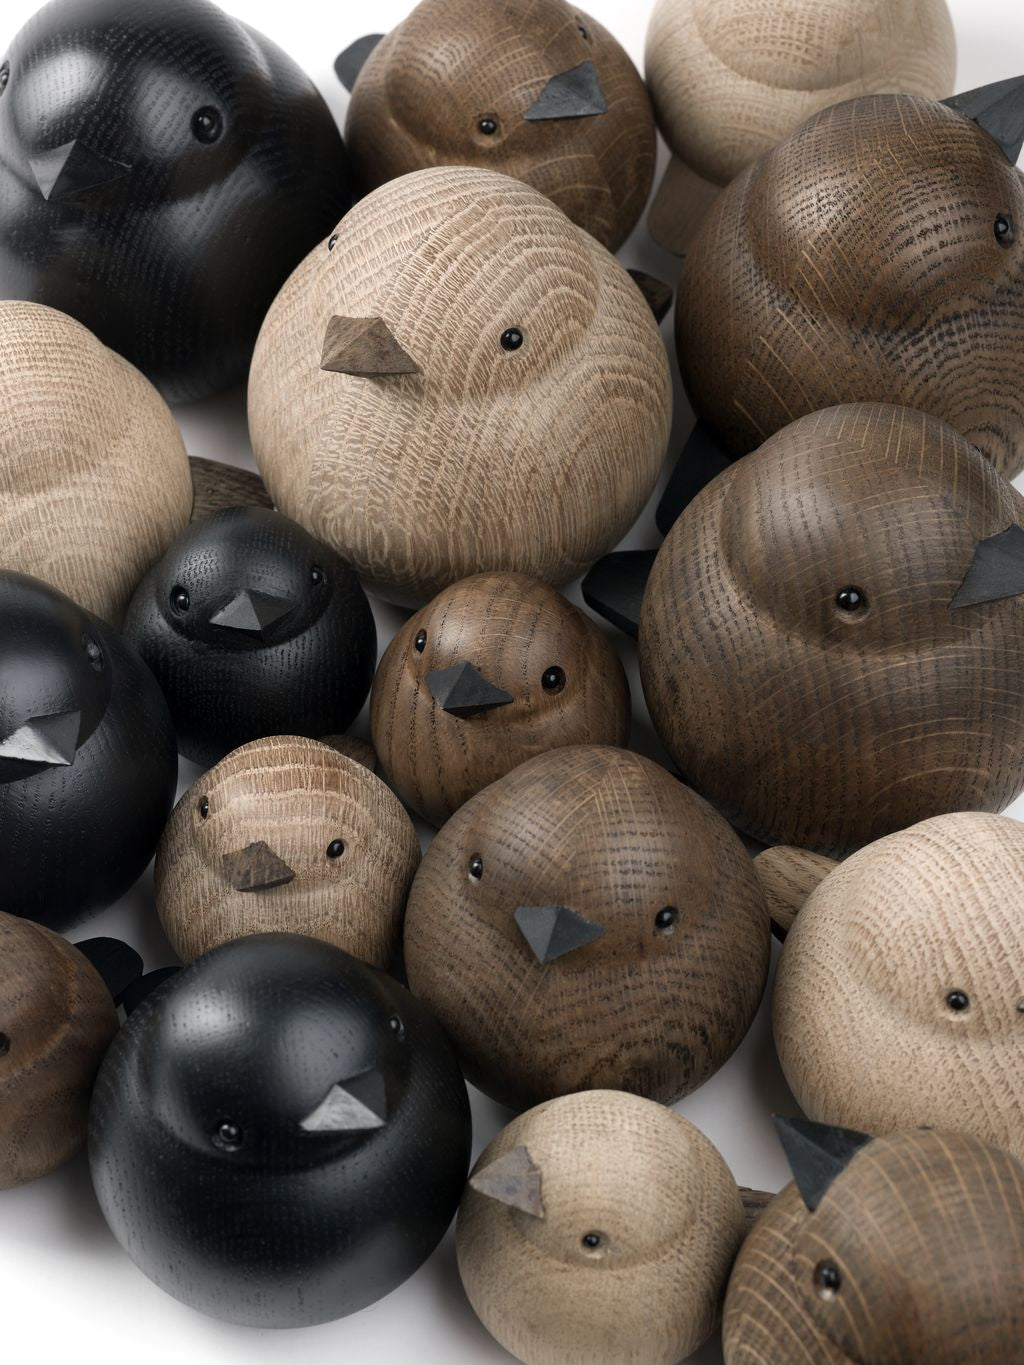 Novoform de diseño Papa Sparrow Figura decorativa, roble manchado negro